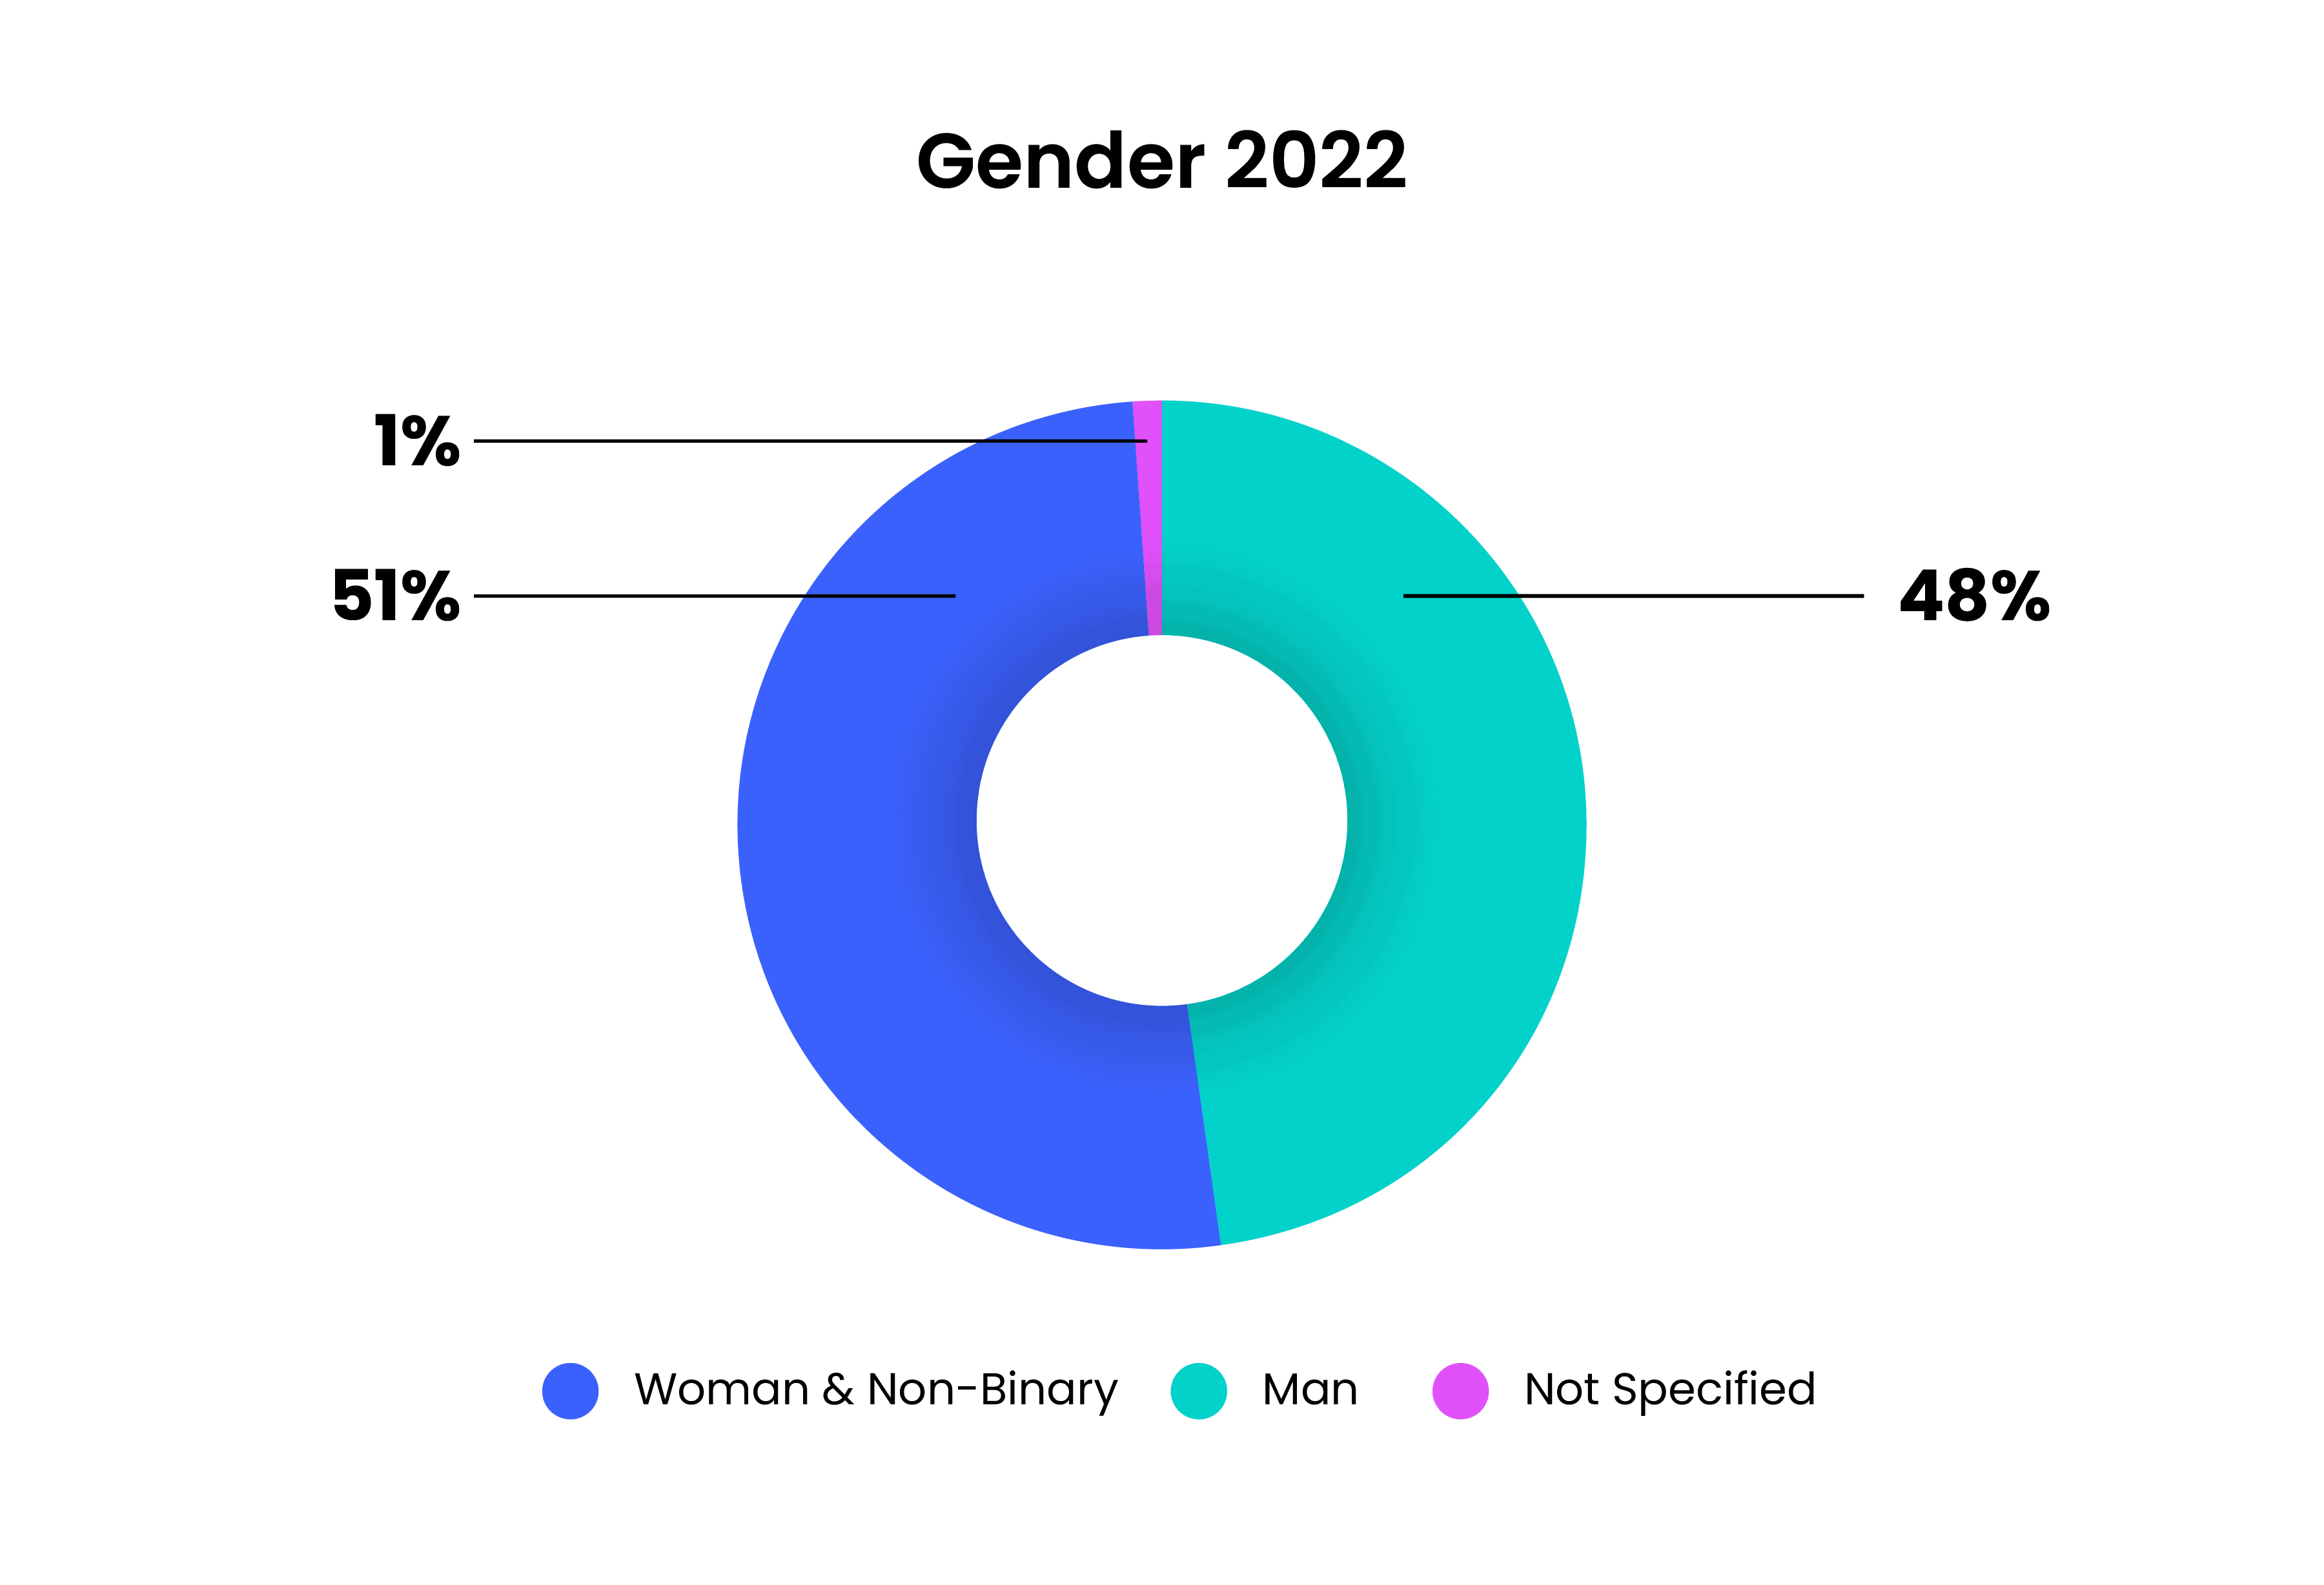 Gender 2022: 51% Women & Non-binary, 48% Men, 1% not specified.